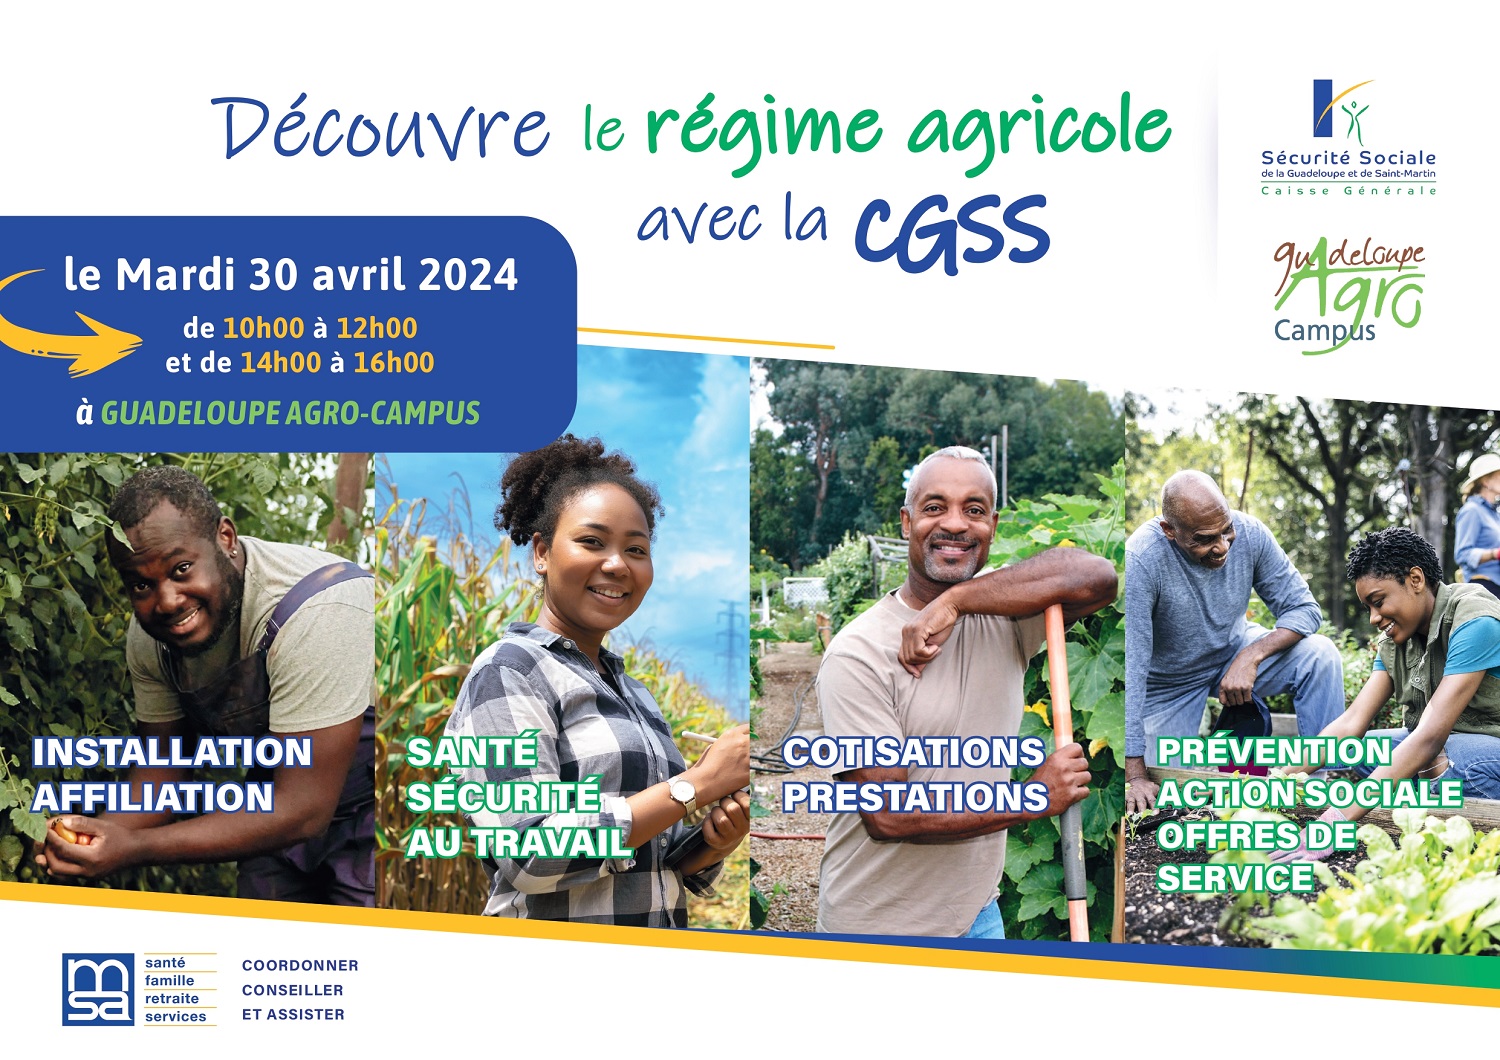 Découvre le régime agricole avec la CGSS à Guadeloupe Agro-Campus